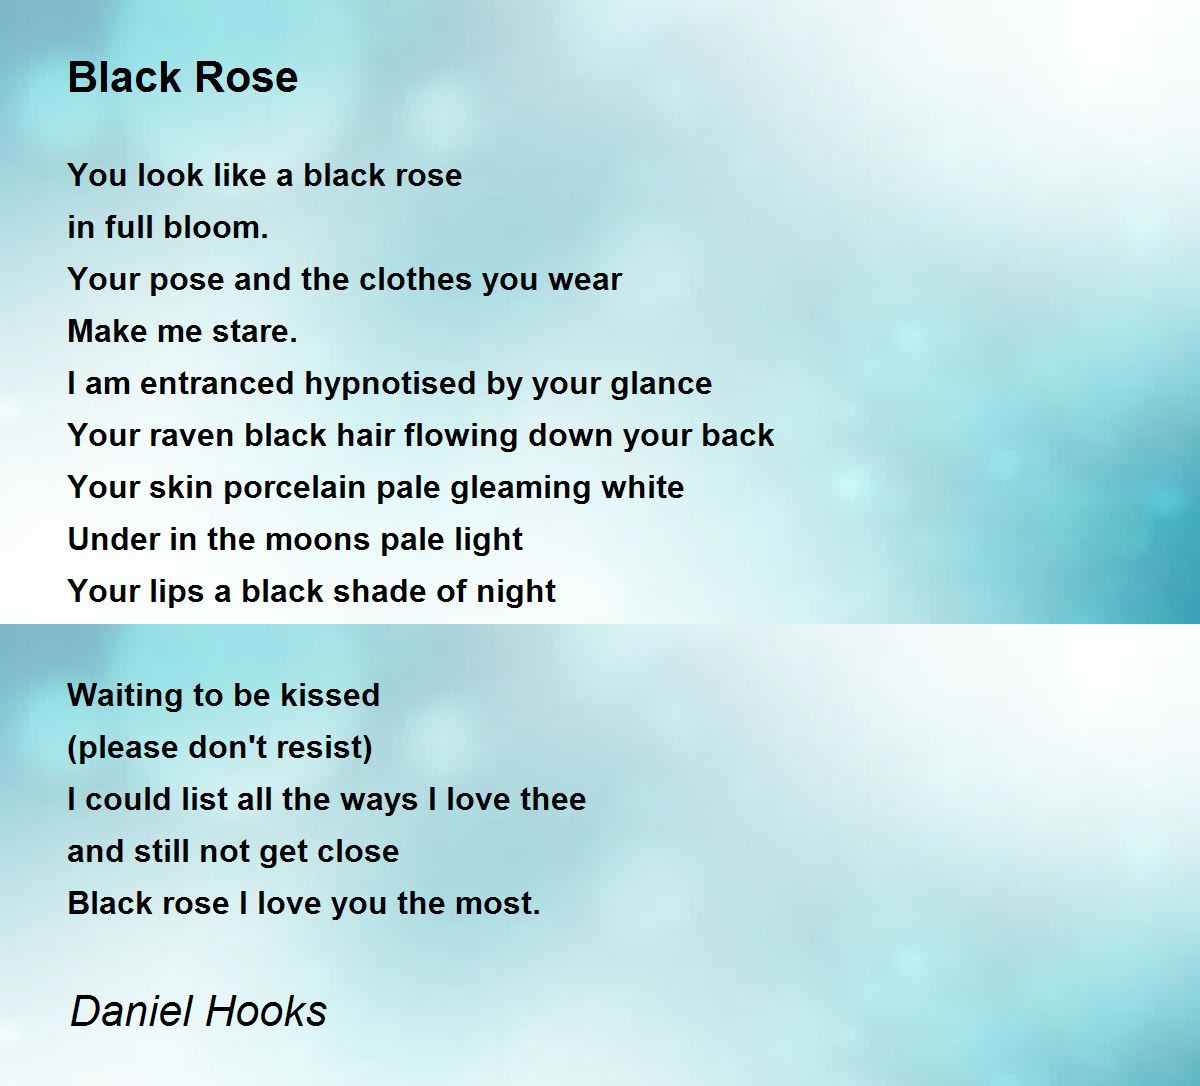 Black Rose - Black Rose Poem by Daniel Hooks